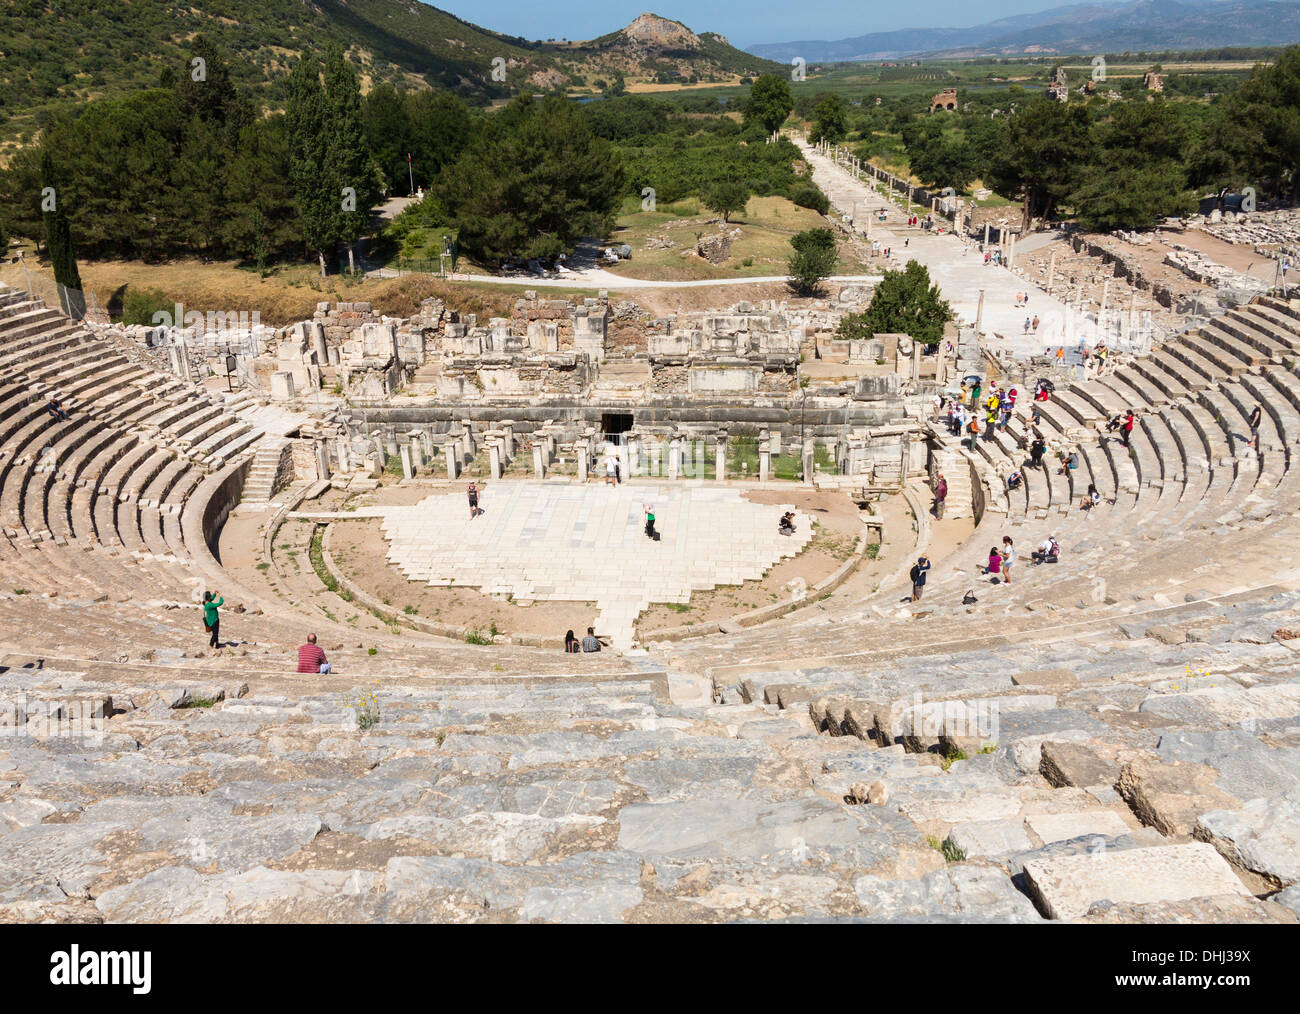 Amphitheater or amphitheatre in old city of Ephesus, Turkey Stock Photo